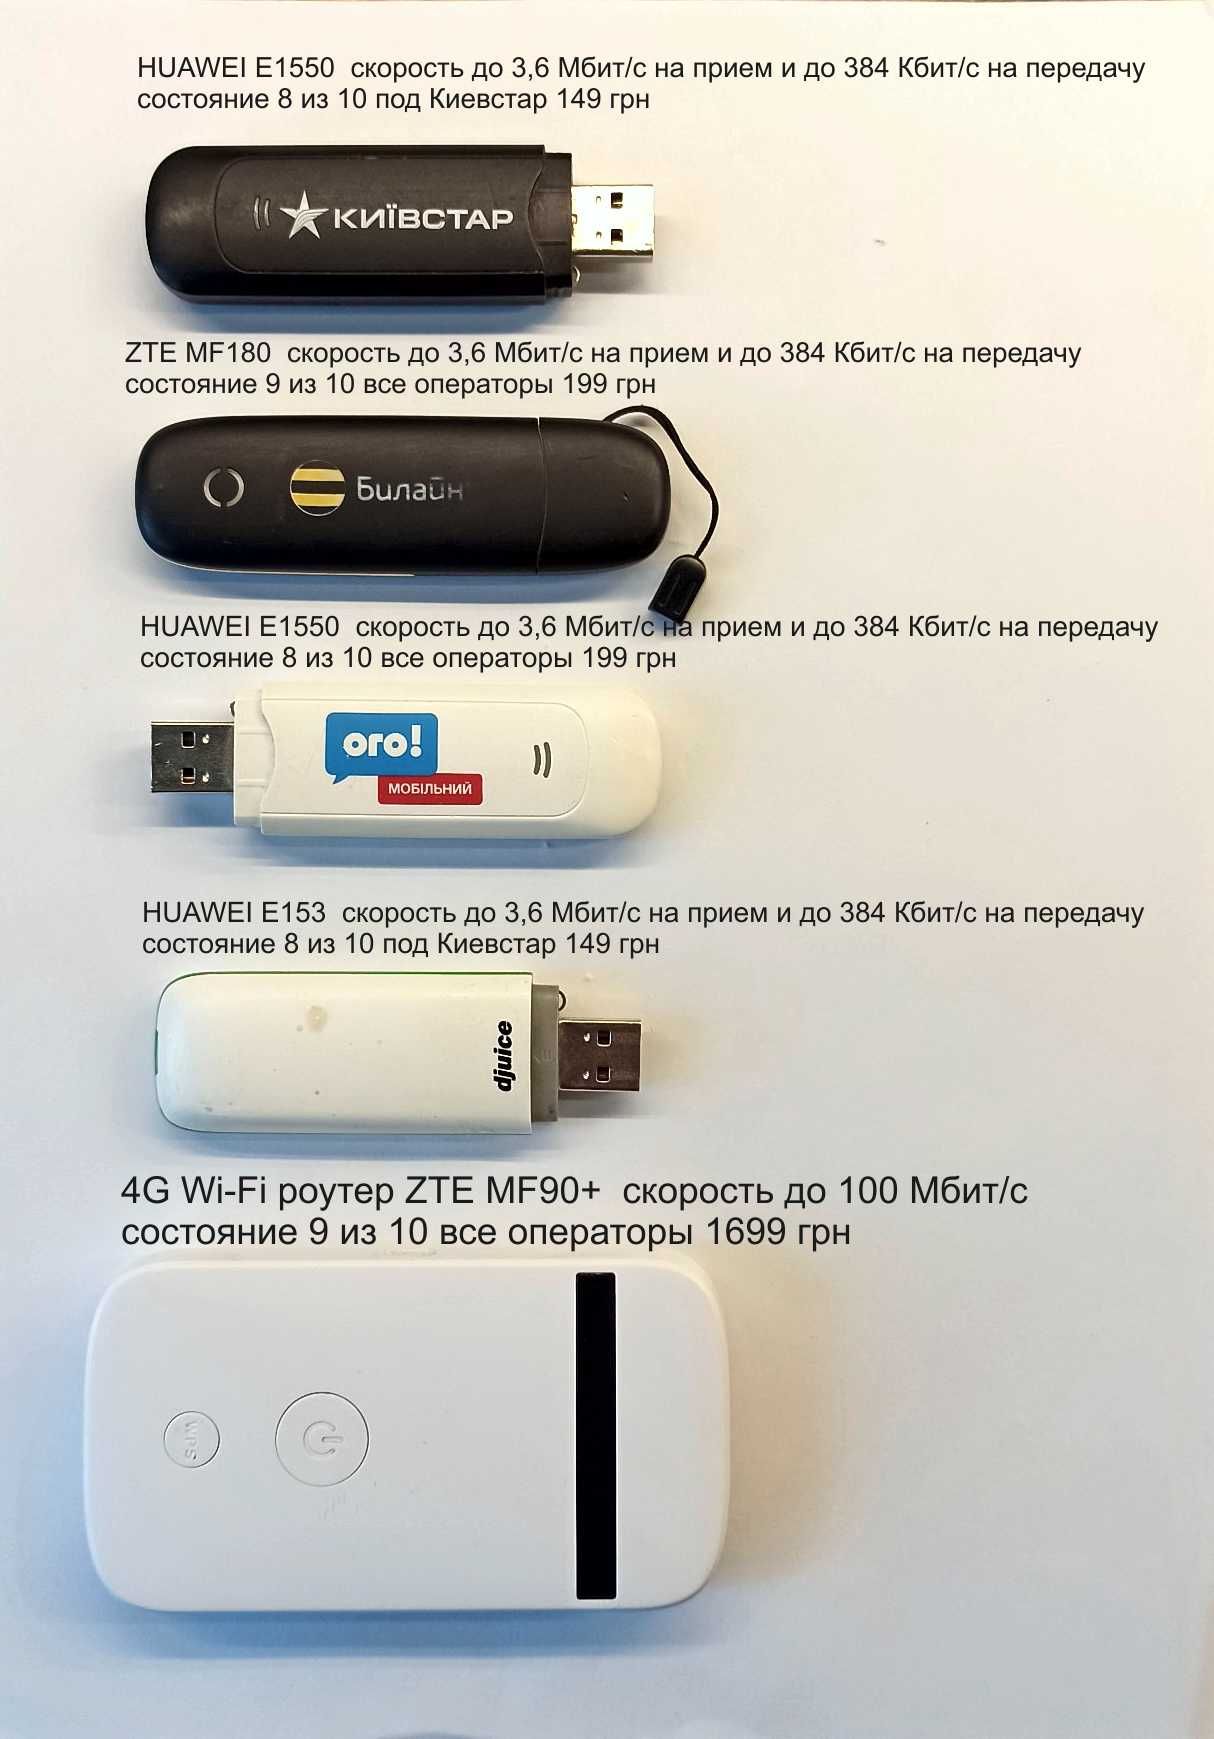 3G Модем ZTE MF180S любая сеть слот карты памяти